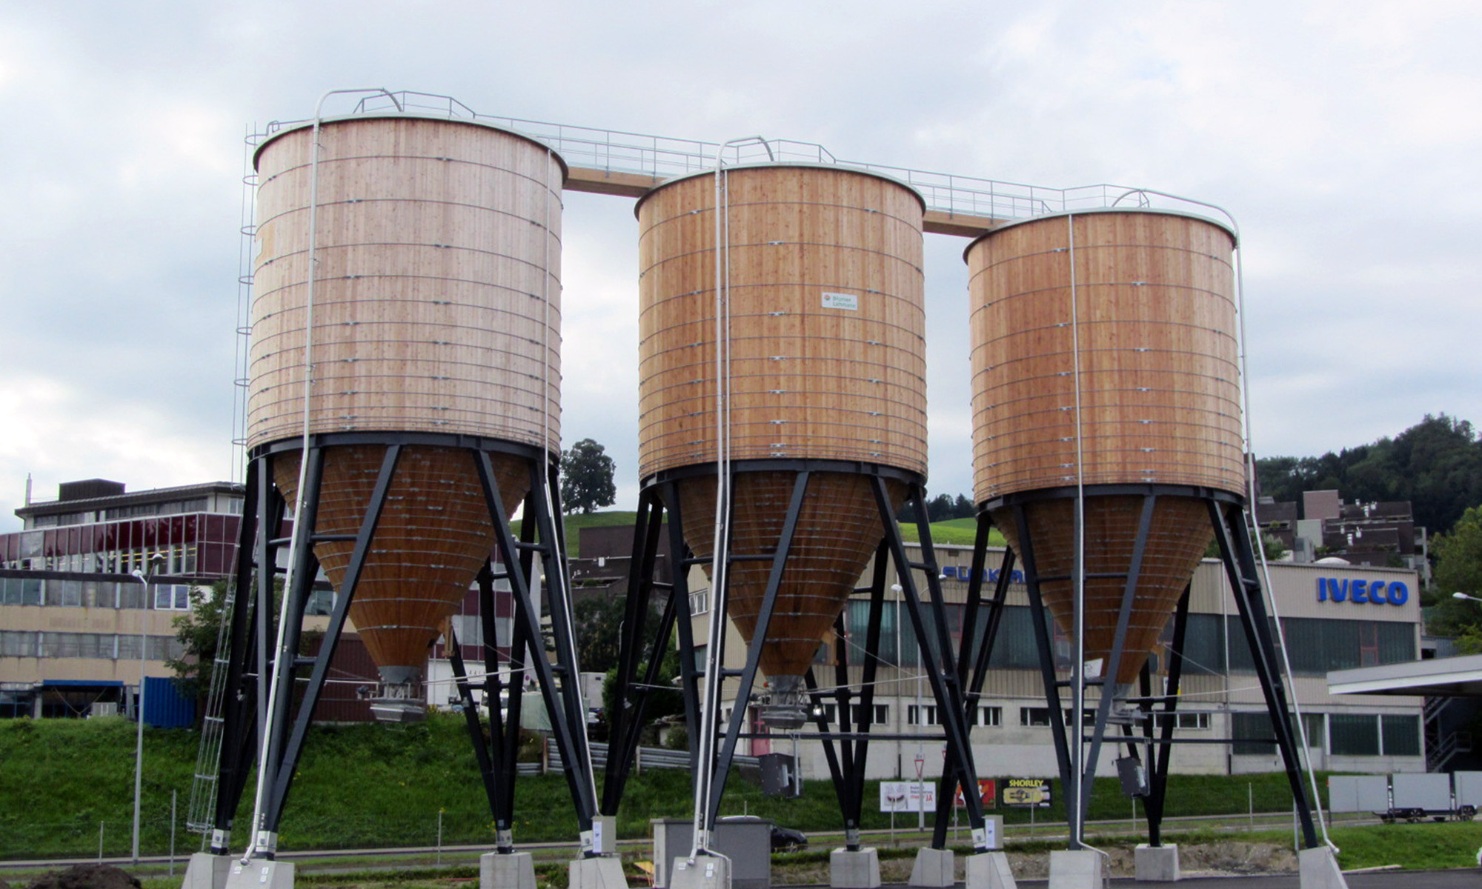 Trois silos ronds en bois disposés côte à côte et reliés par une passerelle de toit, Saint-Gall Neudorf